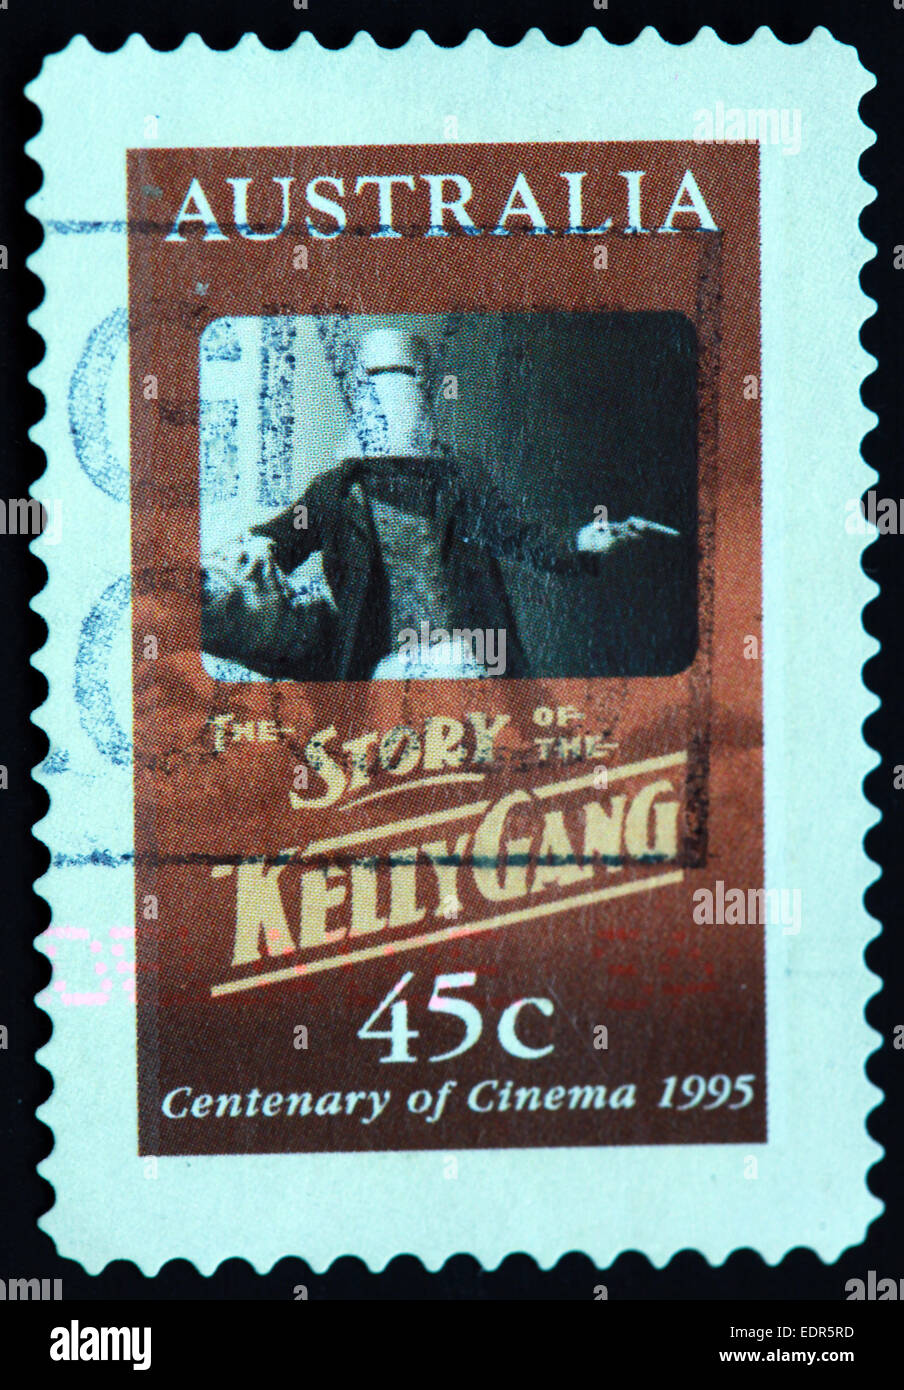 Usato e con timbro postale Australia / Timbro Austrailian 45c storia del Kelly pista 1995 centenario del cinema Foto Stock